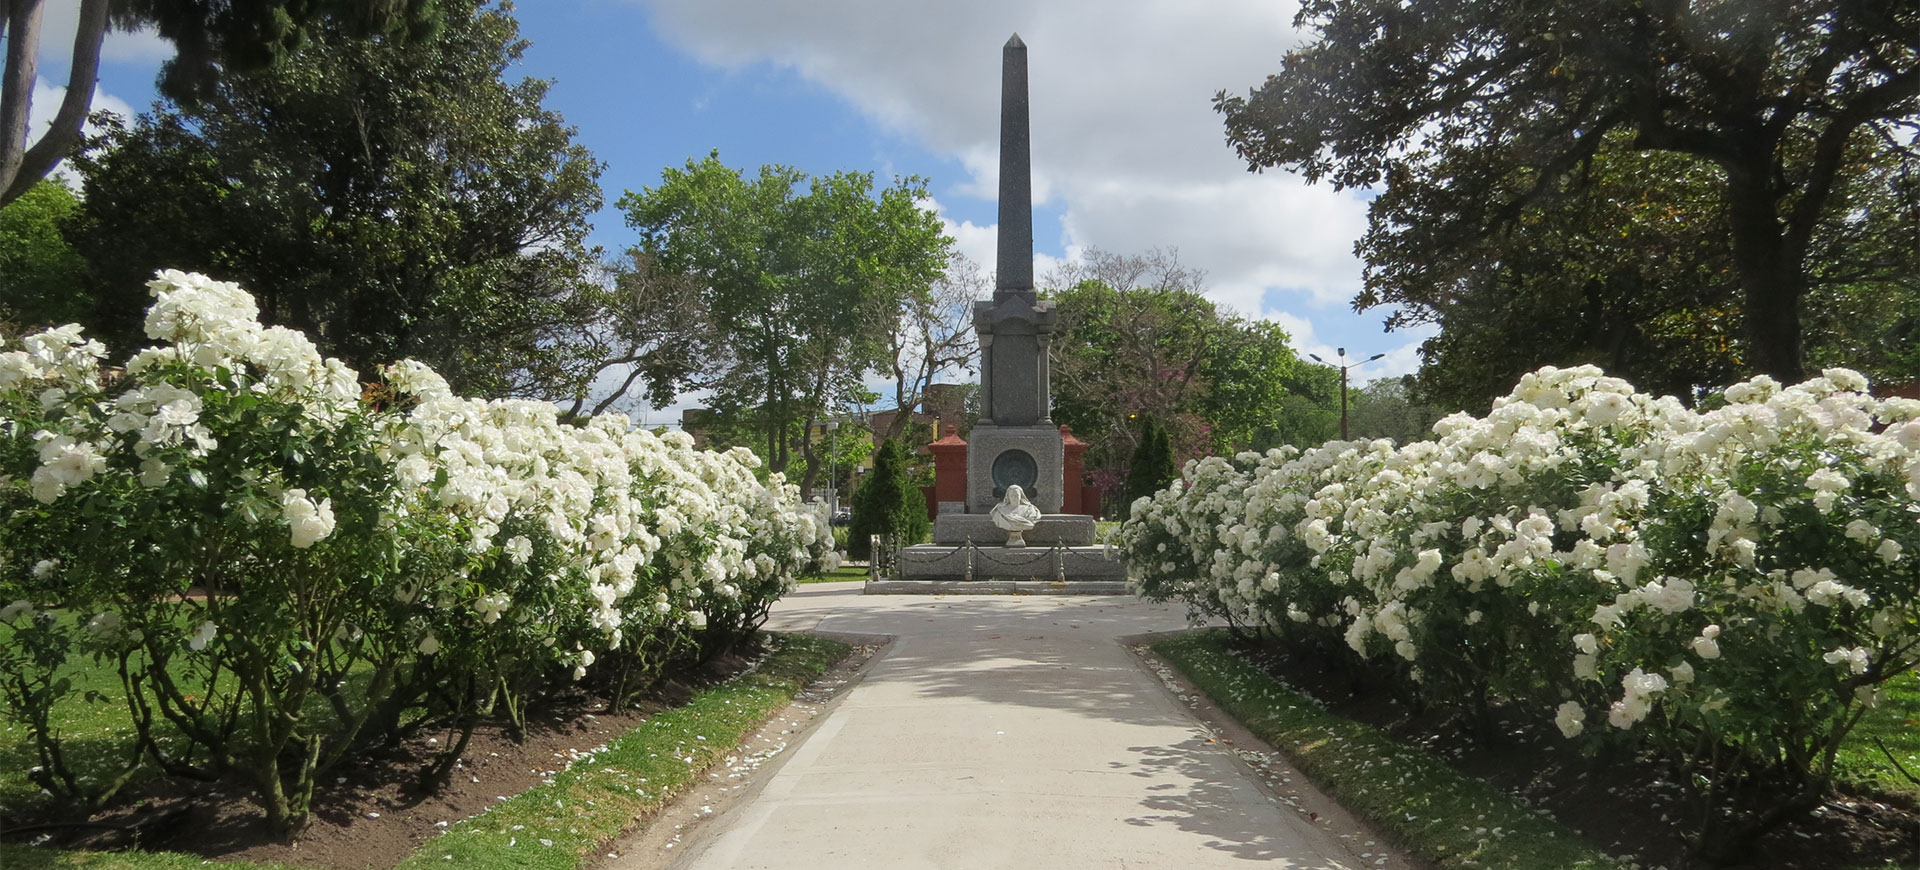 Cementerio Británico Montevideo